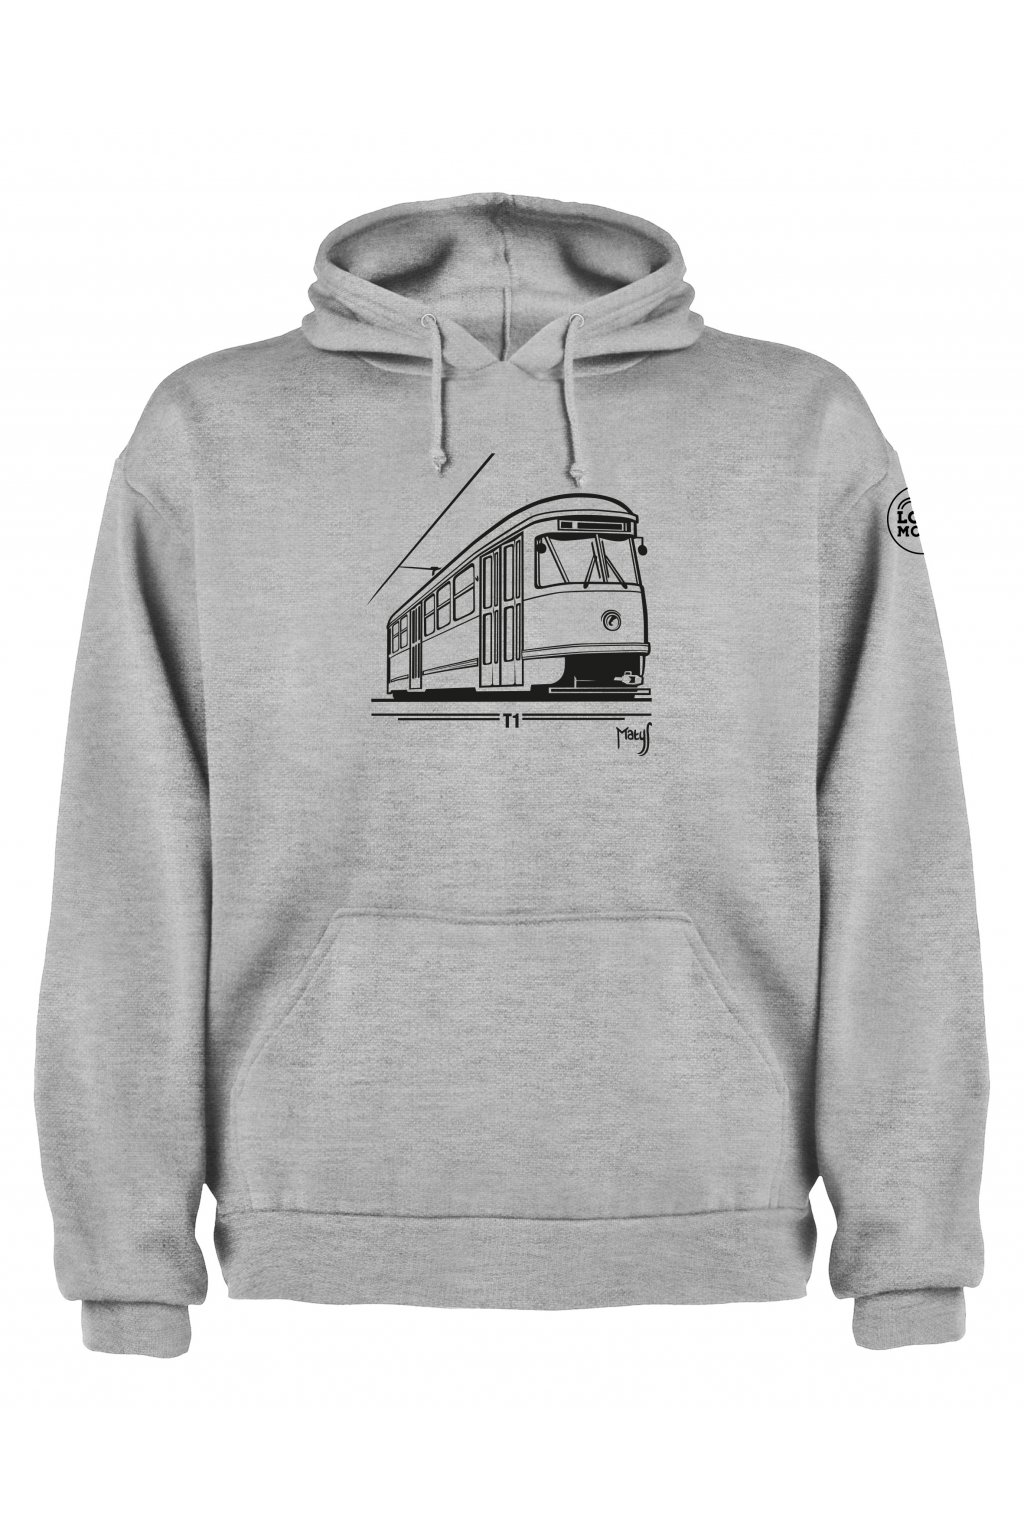 Men's pullover hoodie Locomotif  T1 tram